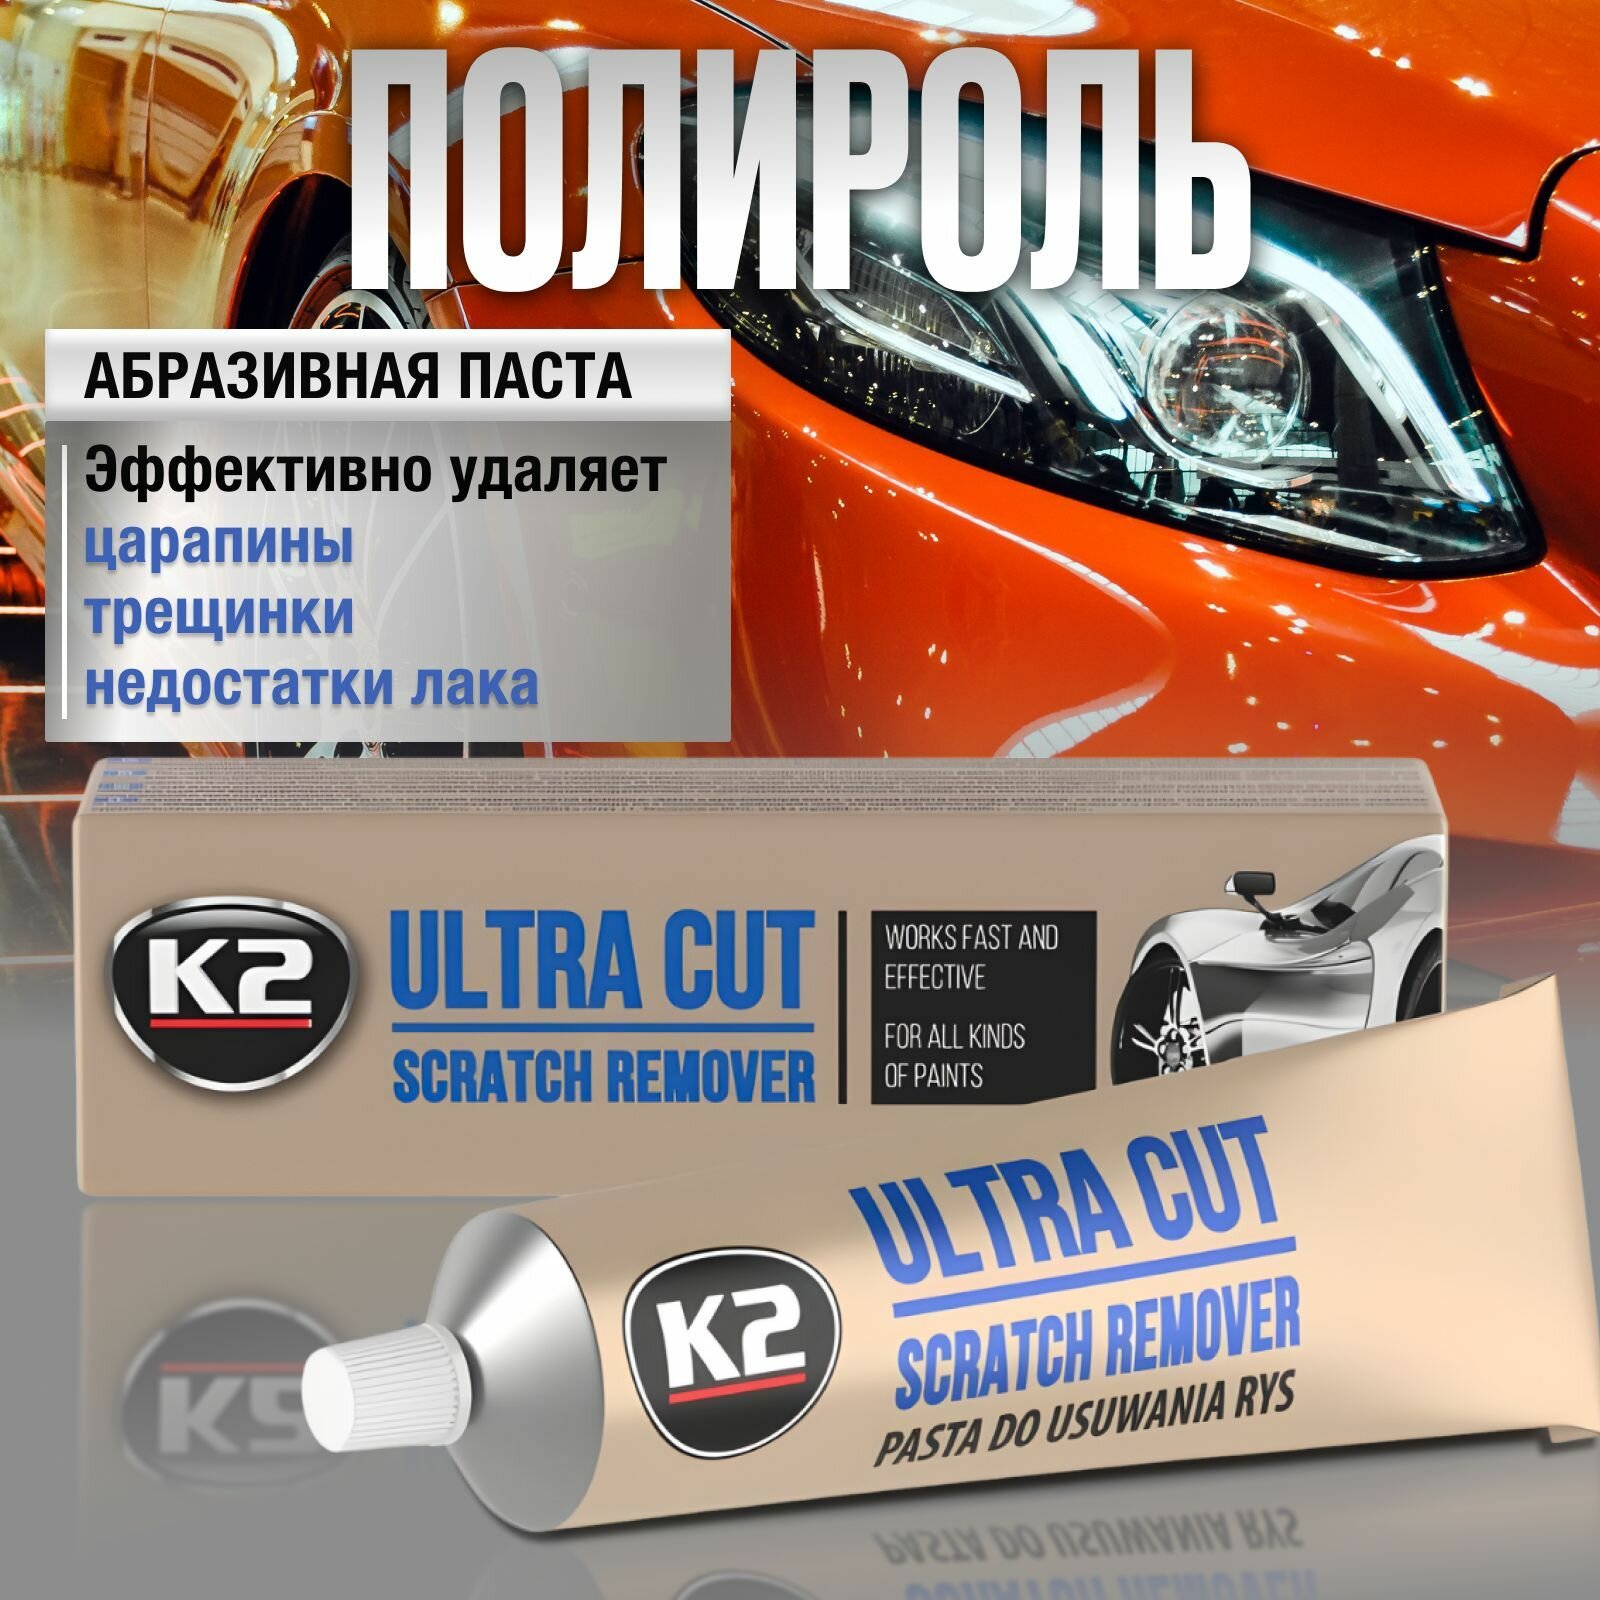 Полироль для автомобиля кузова К2 ULTRA CUT, паста для удаления царапин, 100 гр.